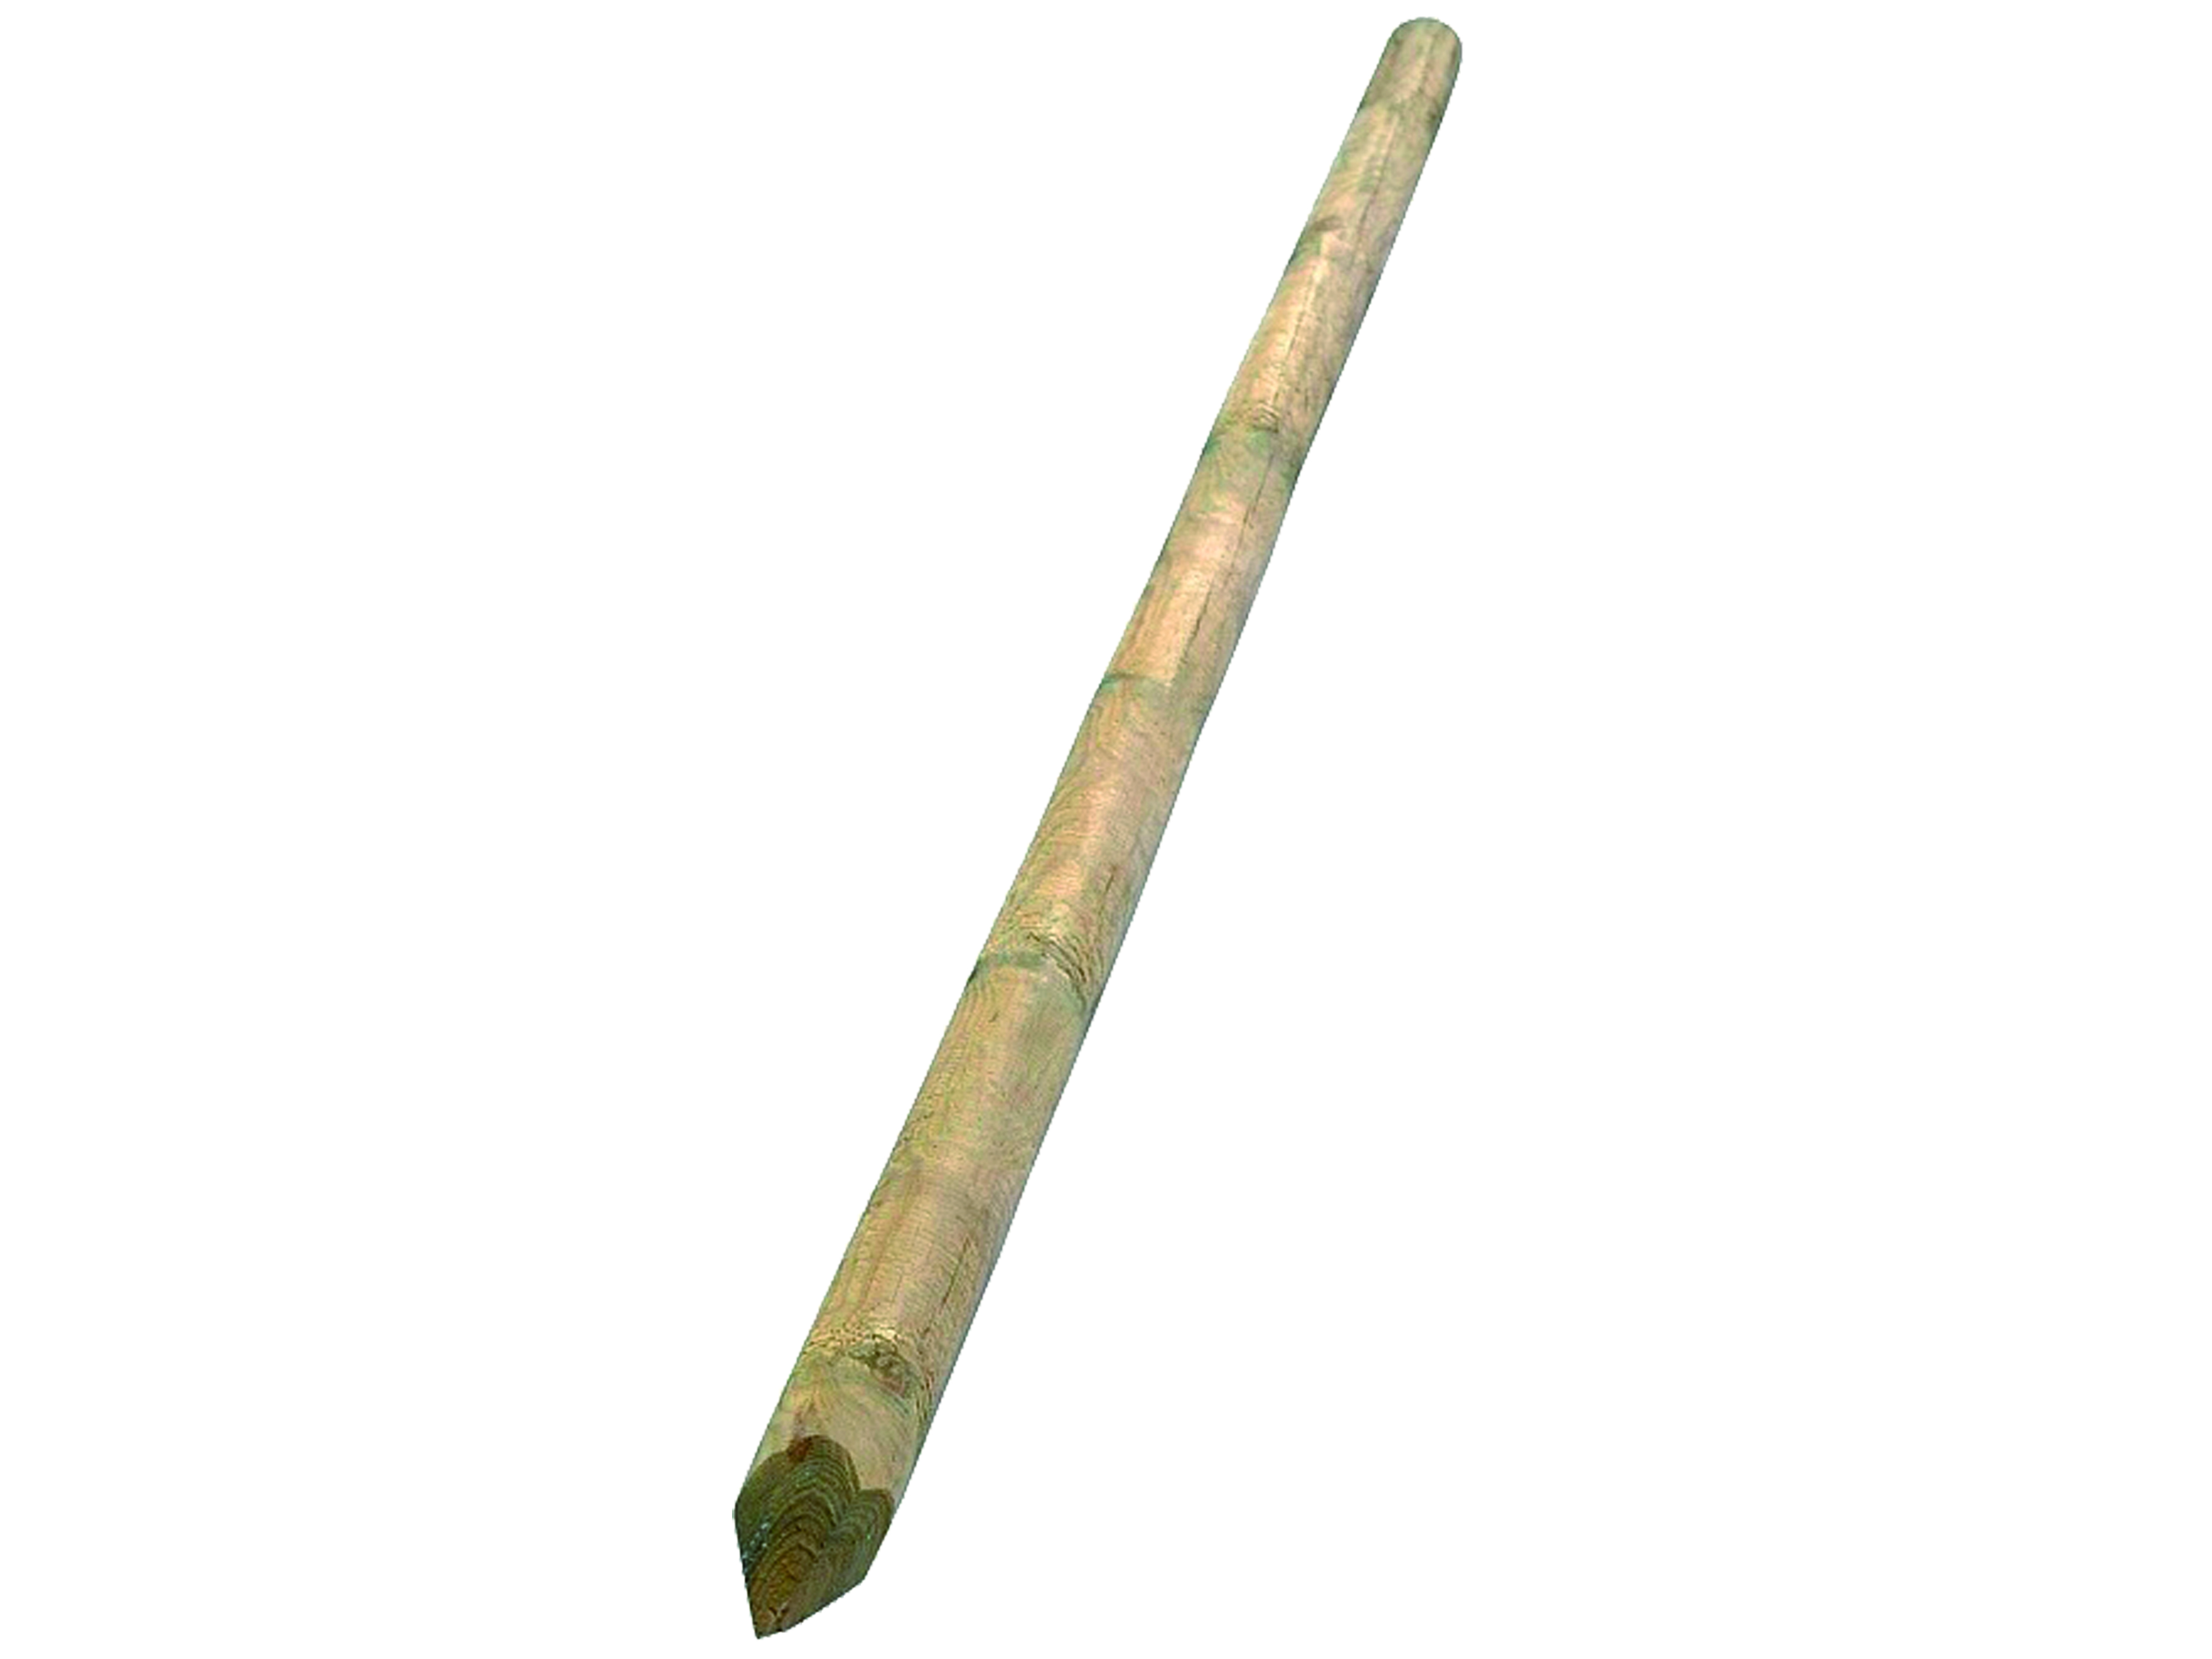 Zafido Kůl se špicí - pr. 6 cm/dl. 250 cm (Osobní odběr)